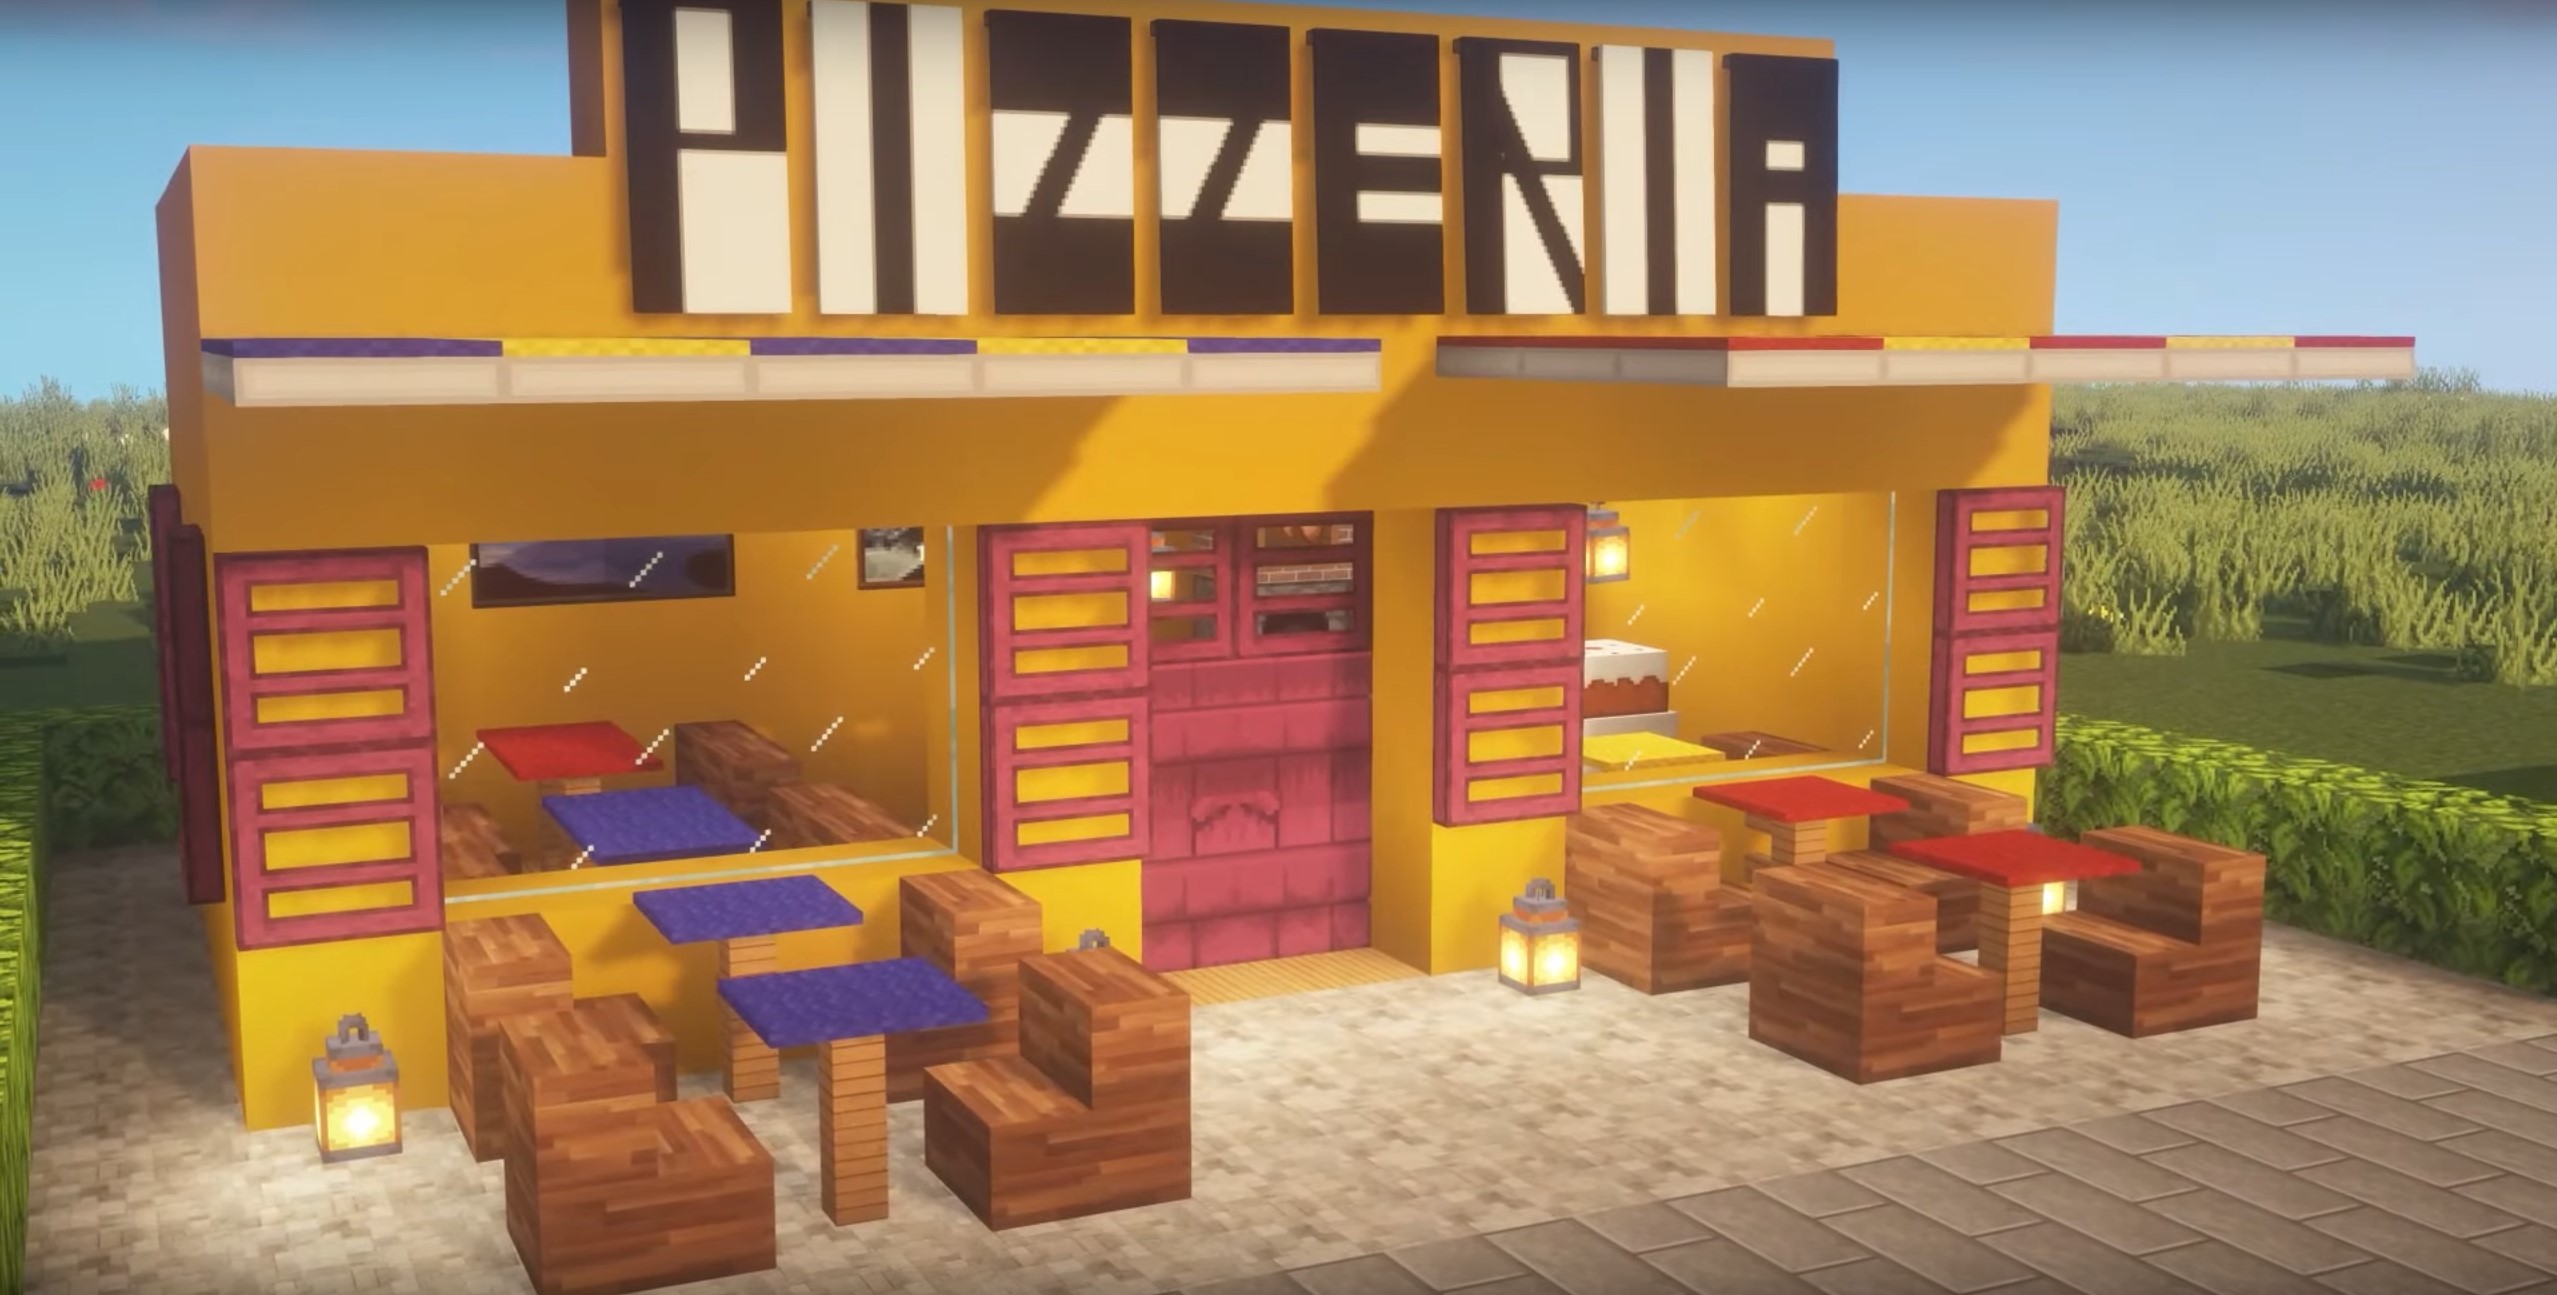 Pizzeria minecraft building idea